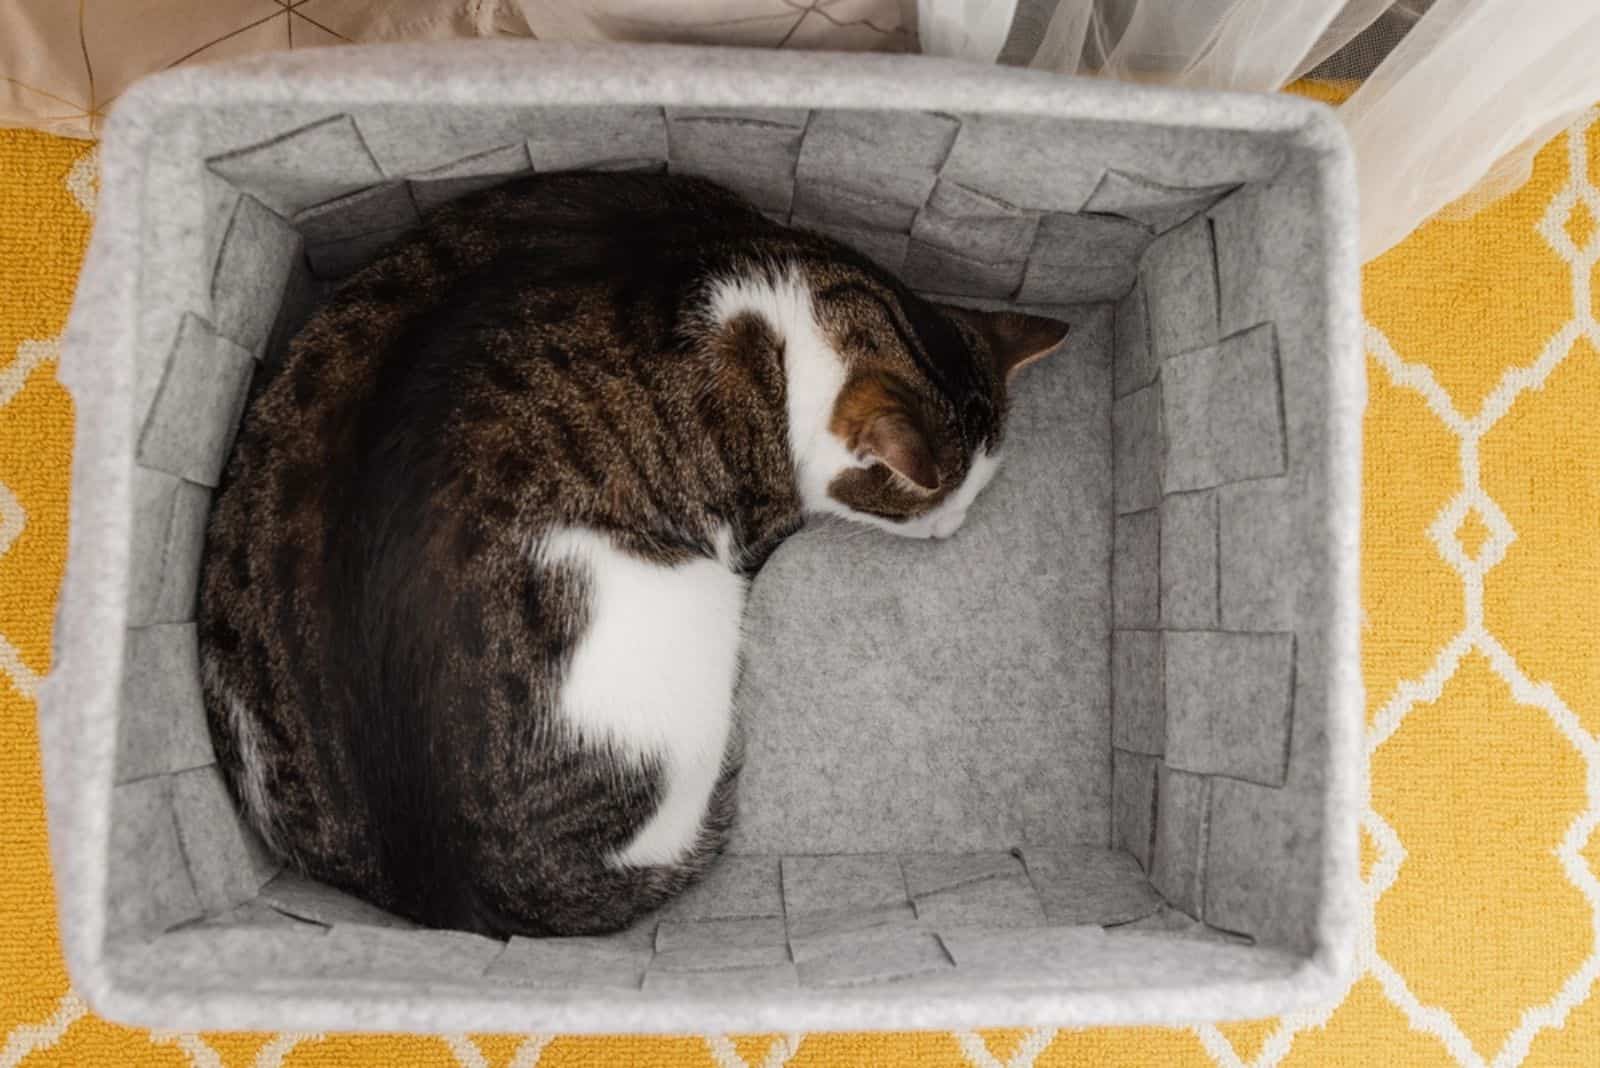 Huiskat slaapt in gezellige grijze vilten opbergmand